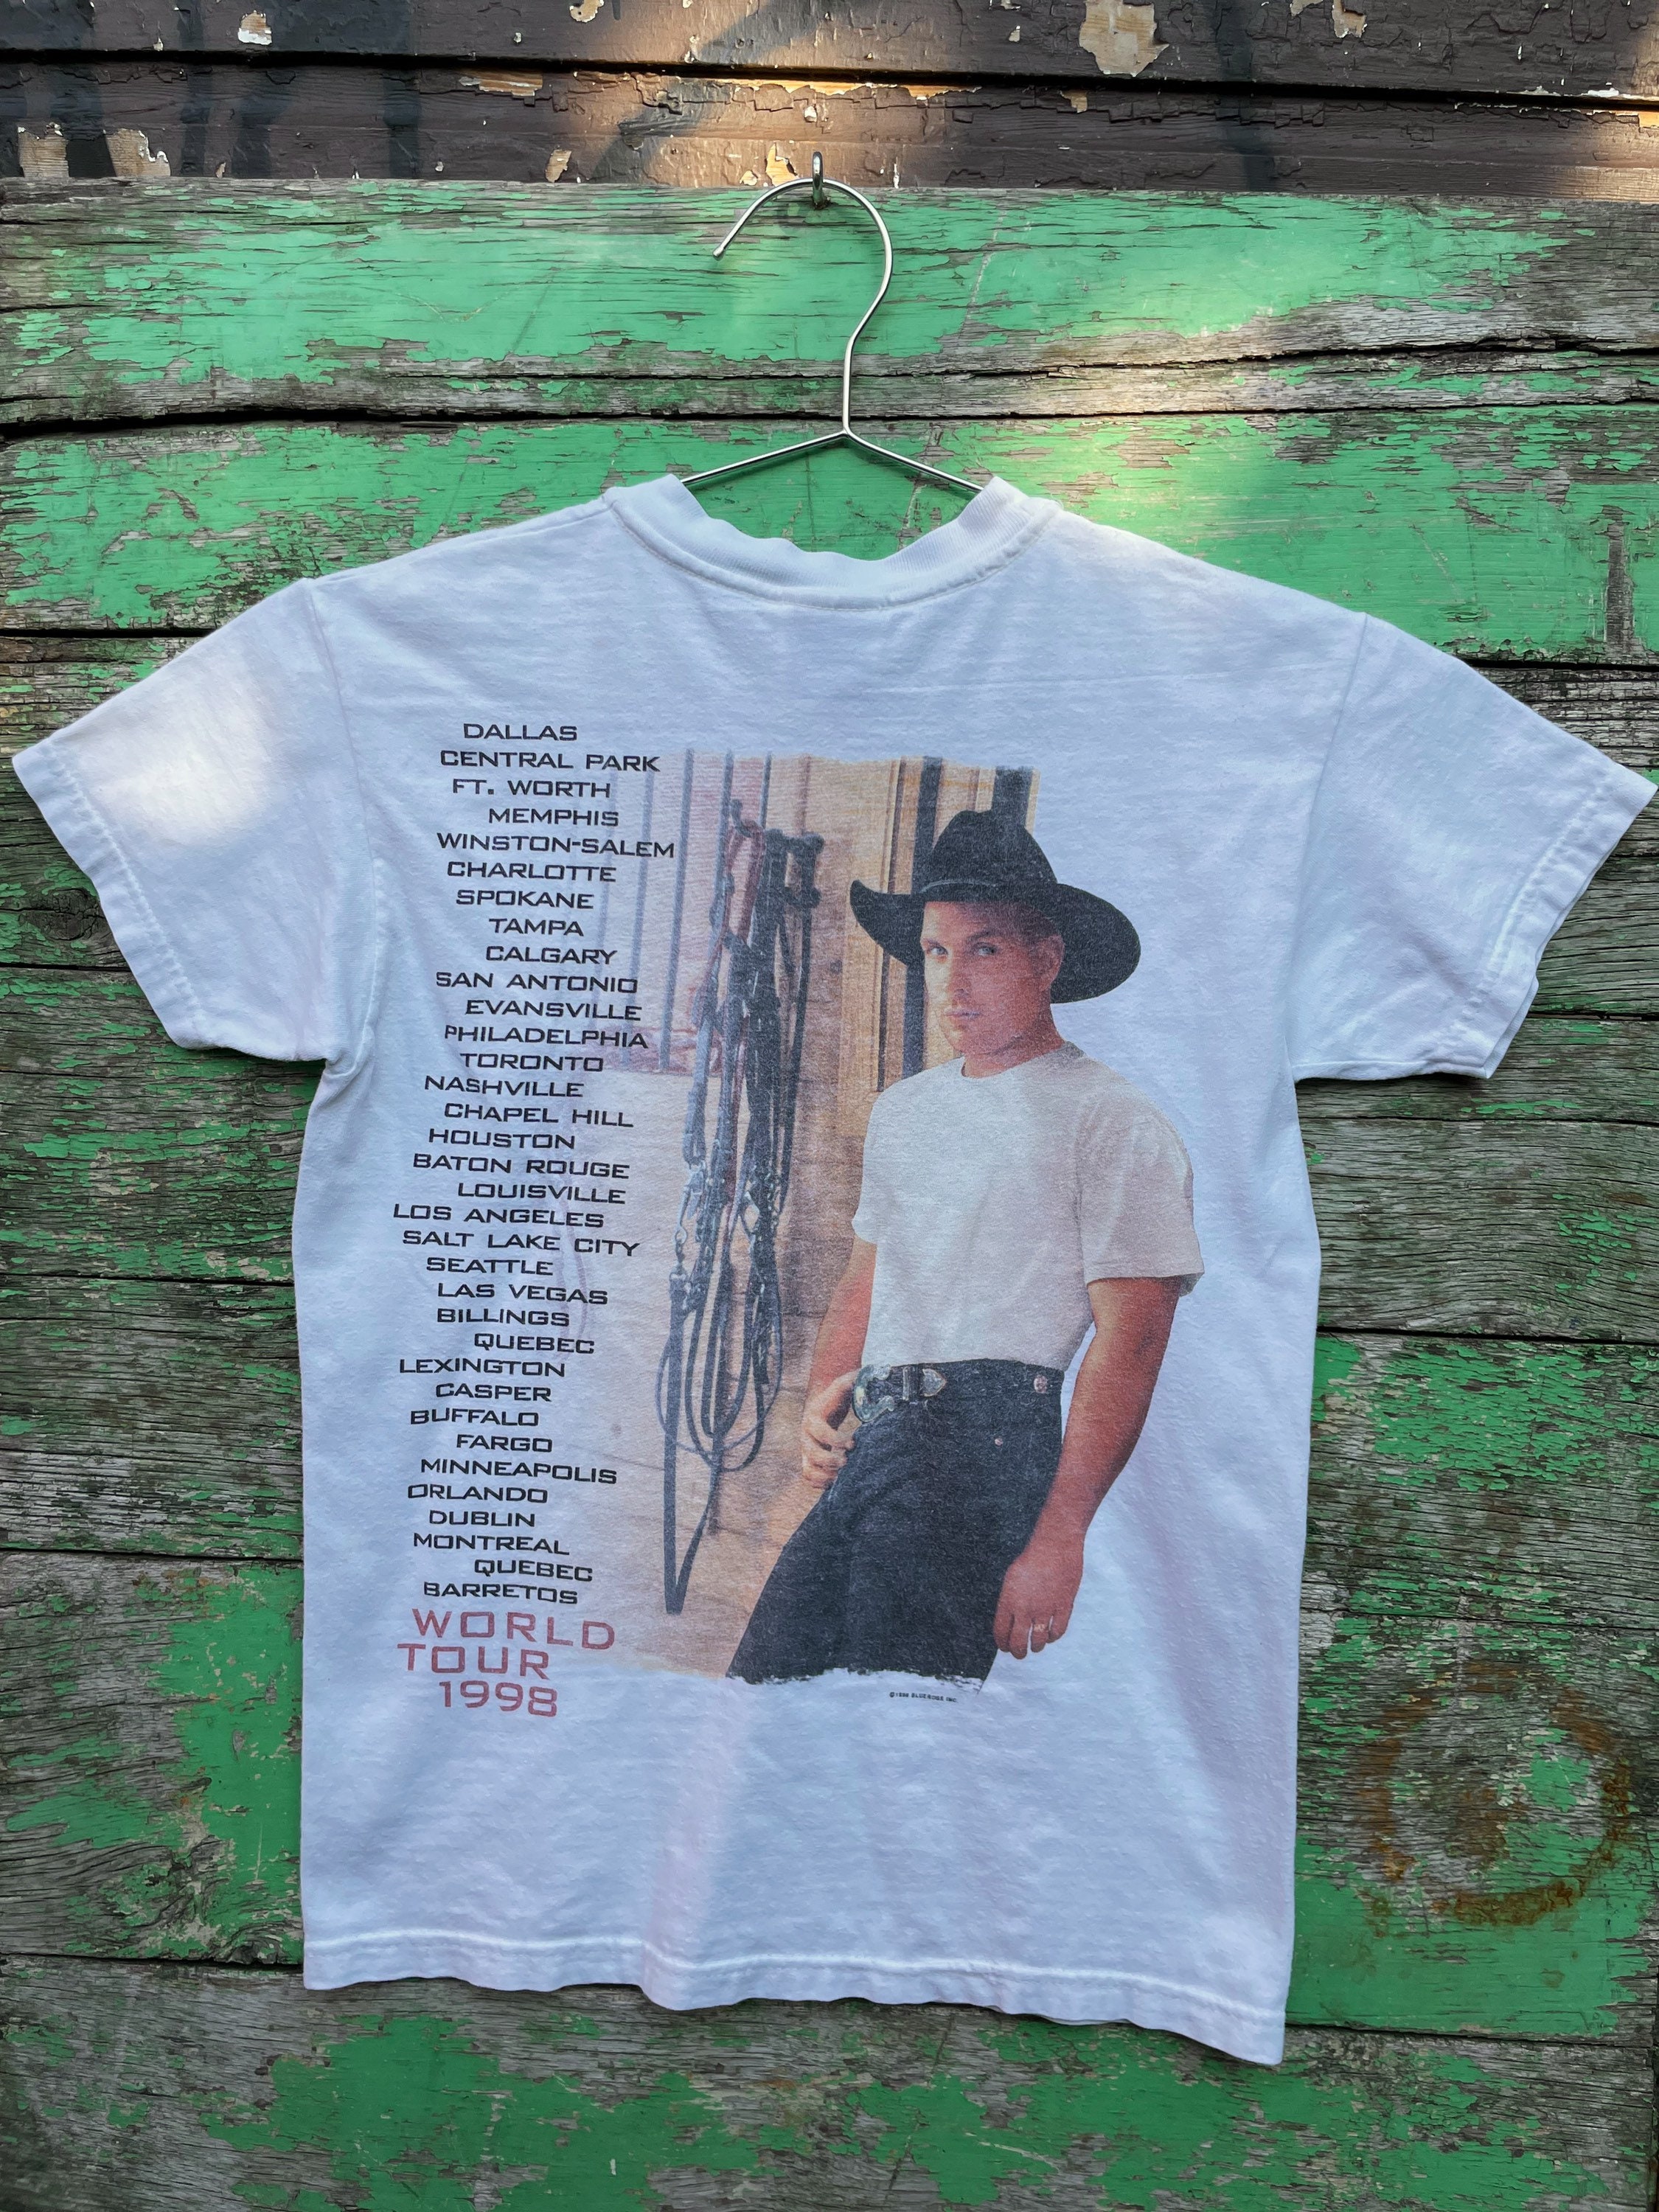 90s Garth Brooks T-shirt 